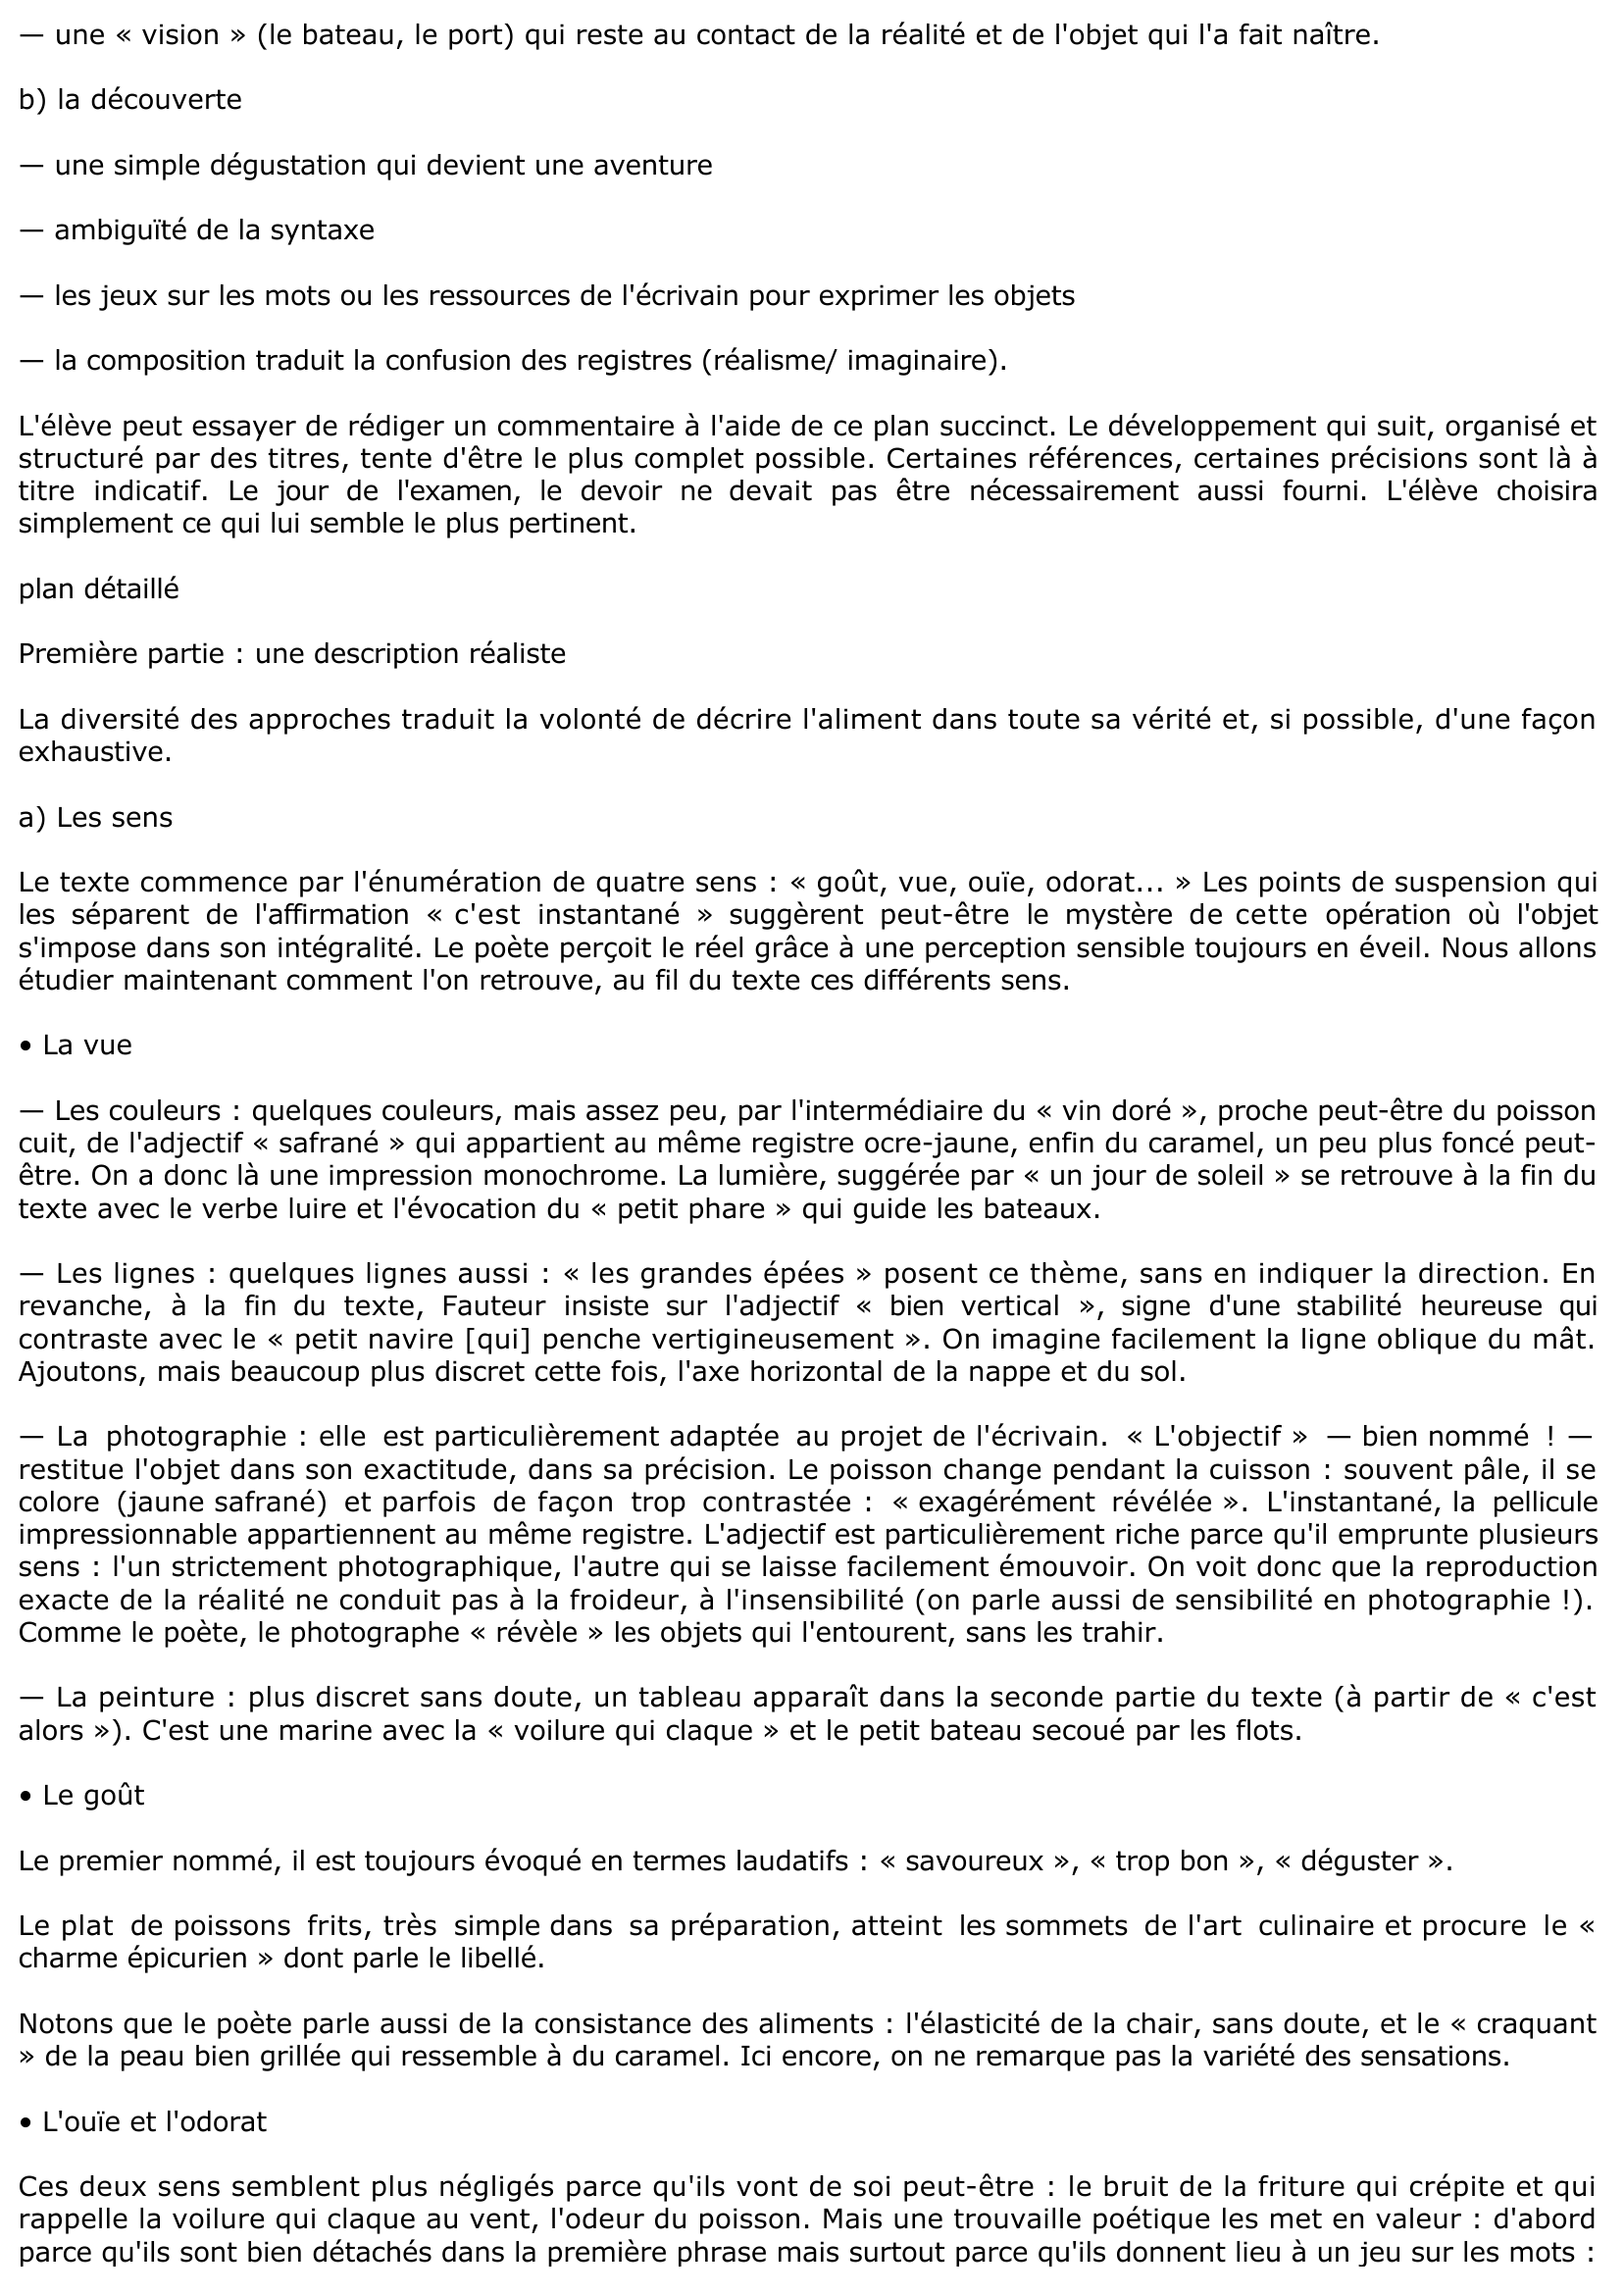 Prévisualisation du document Plat de poissons frits (Francis PONGE, Pièces)